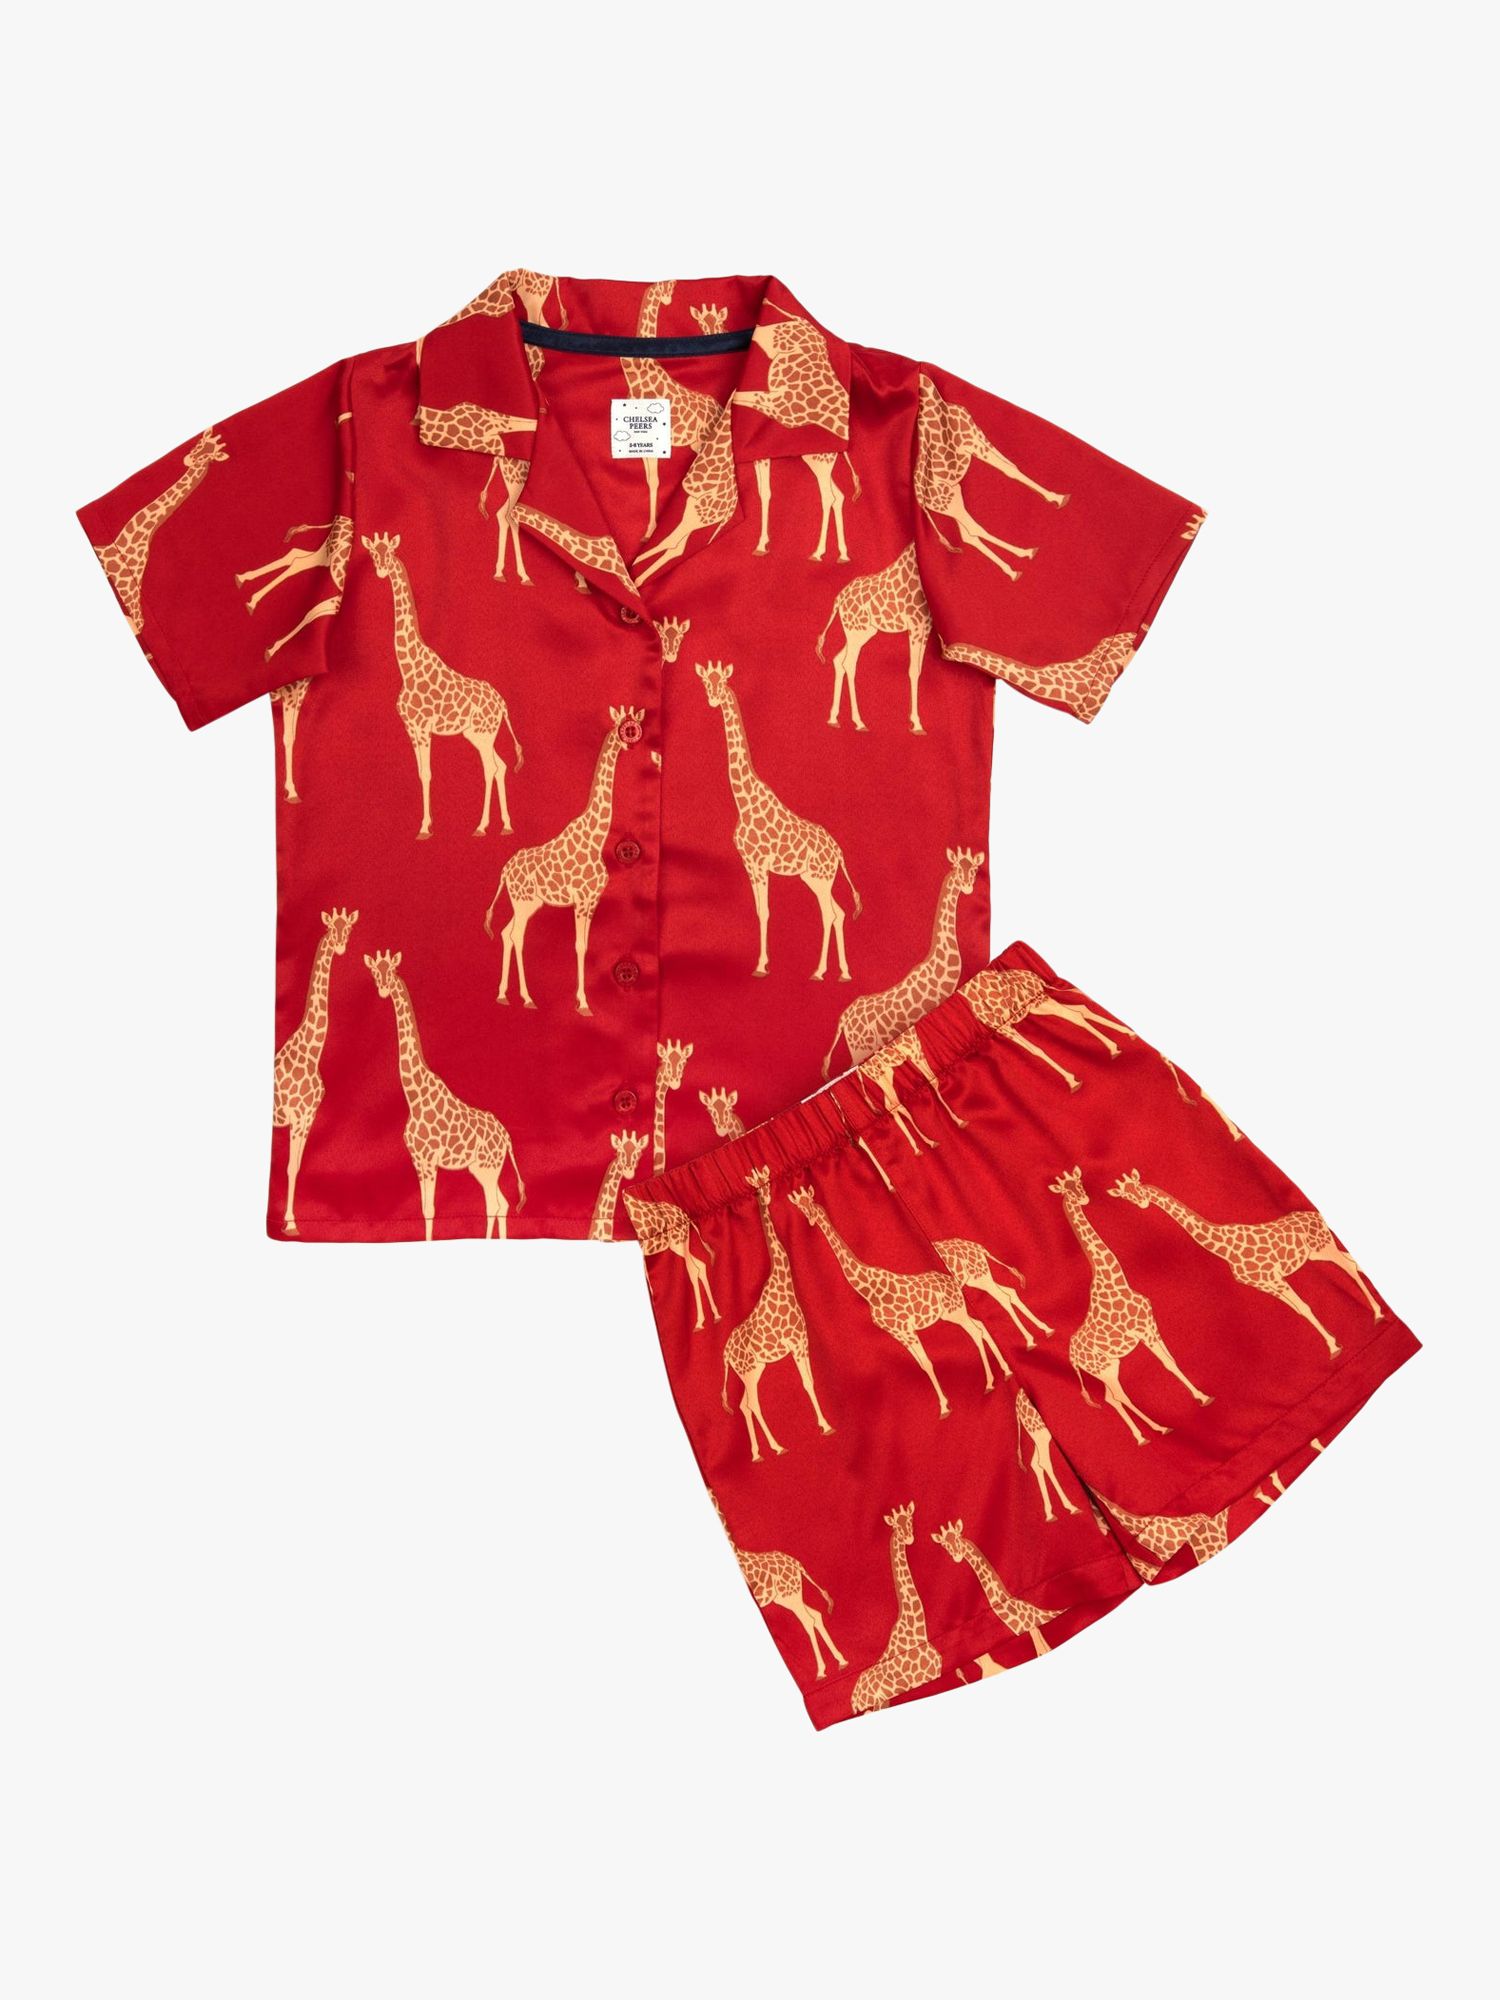 Chelsea Peers Kids' Satin Giraffe Shorts Pyjama Set, Red, 1-2 years